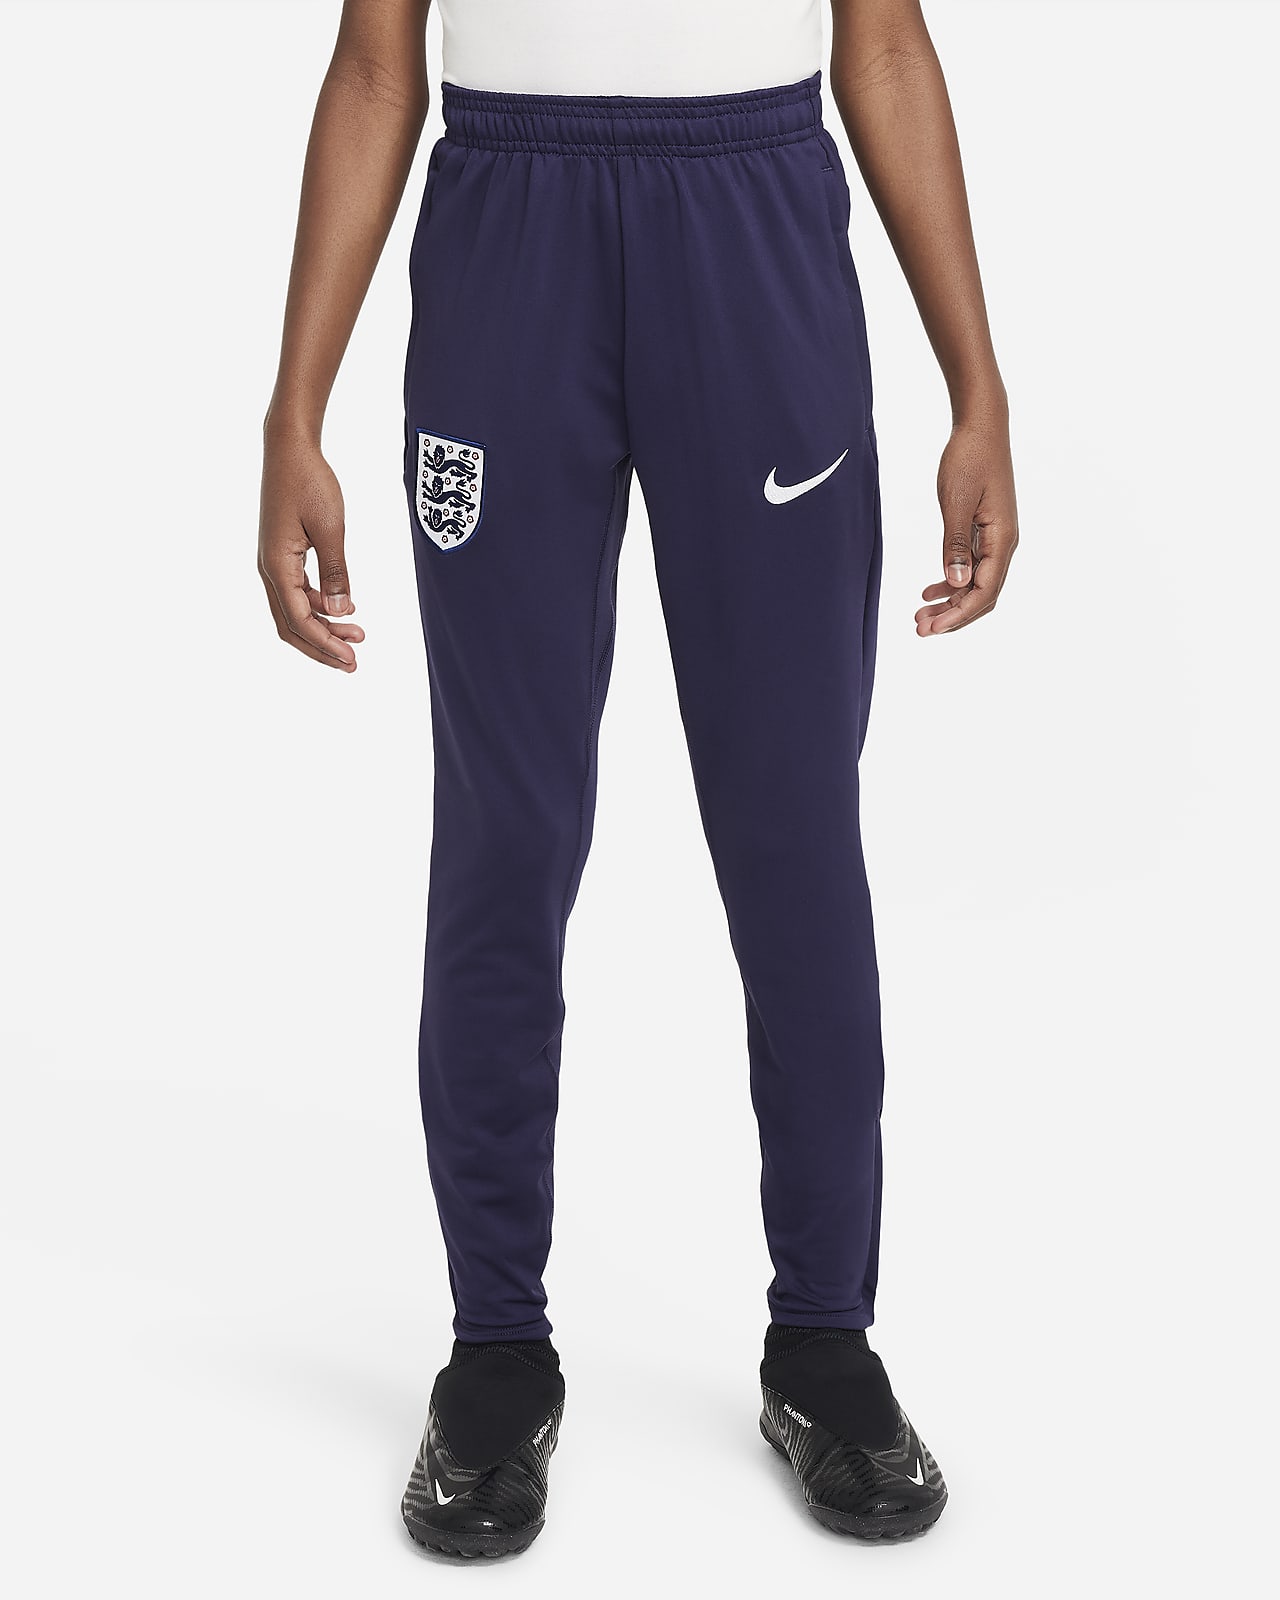 Anglia Strike Nike Dri-FIT kötött futballnadrág nagyobb gyerekeknek